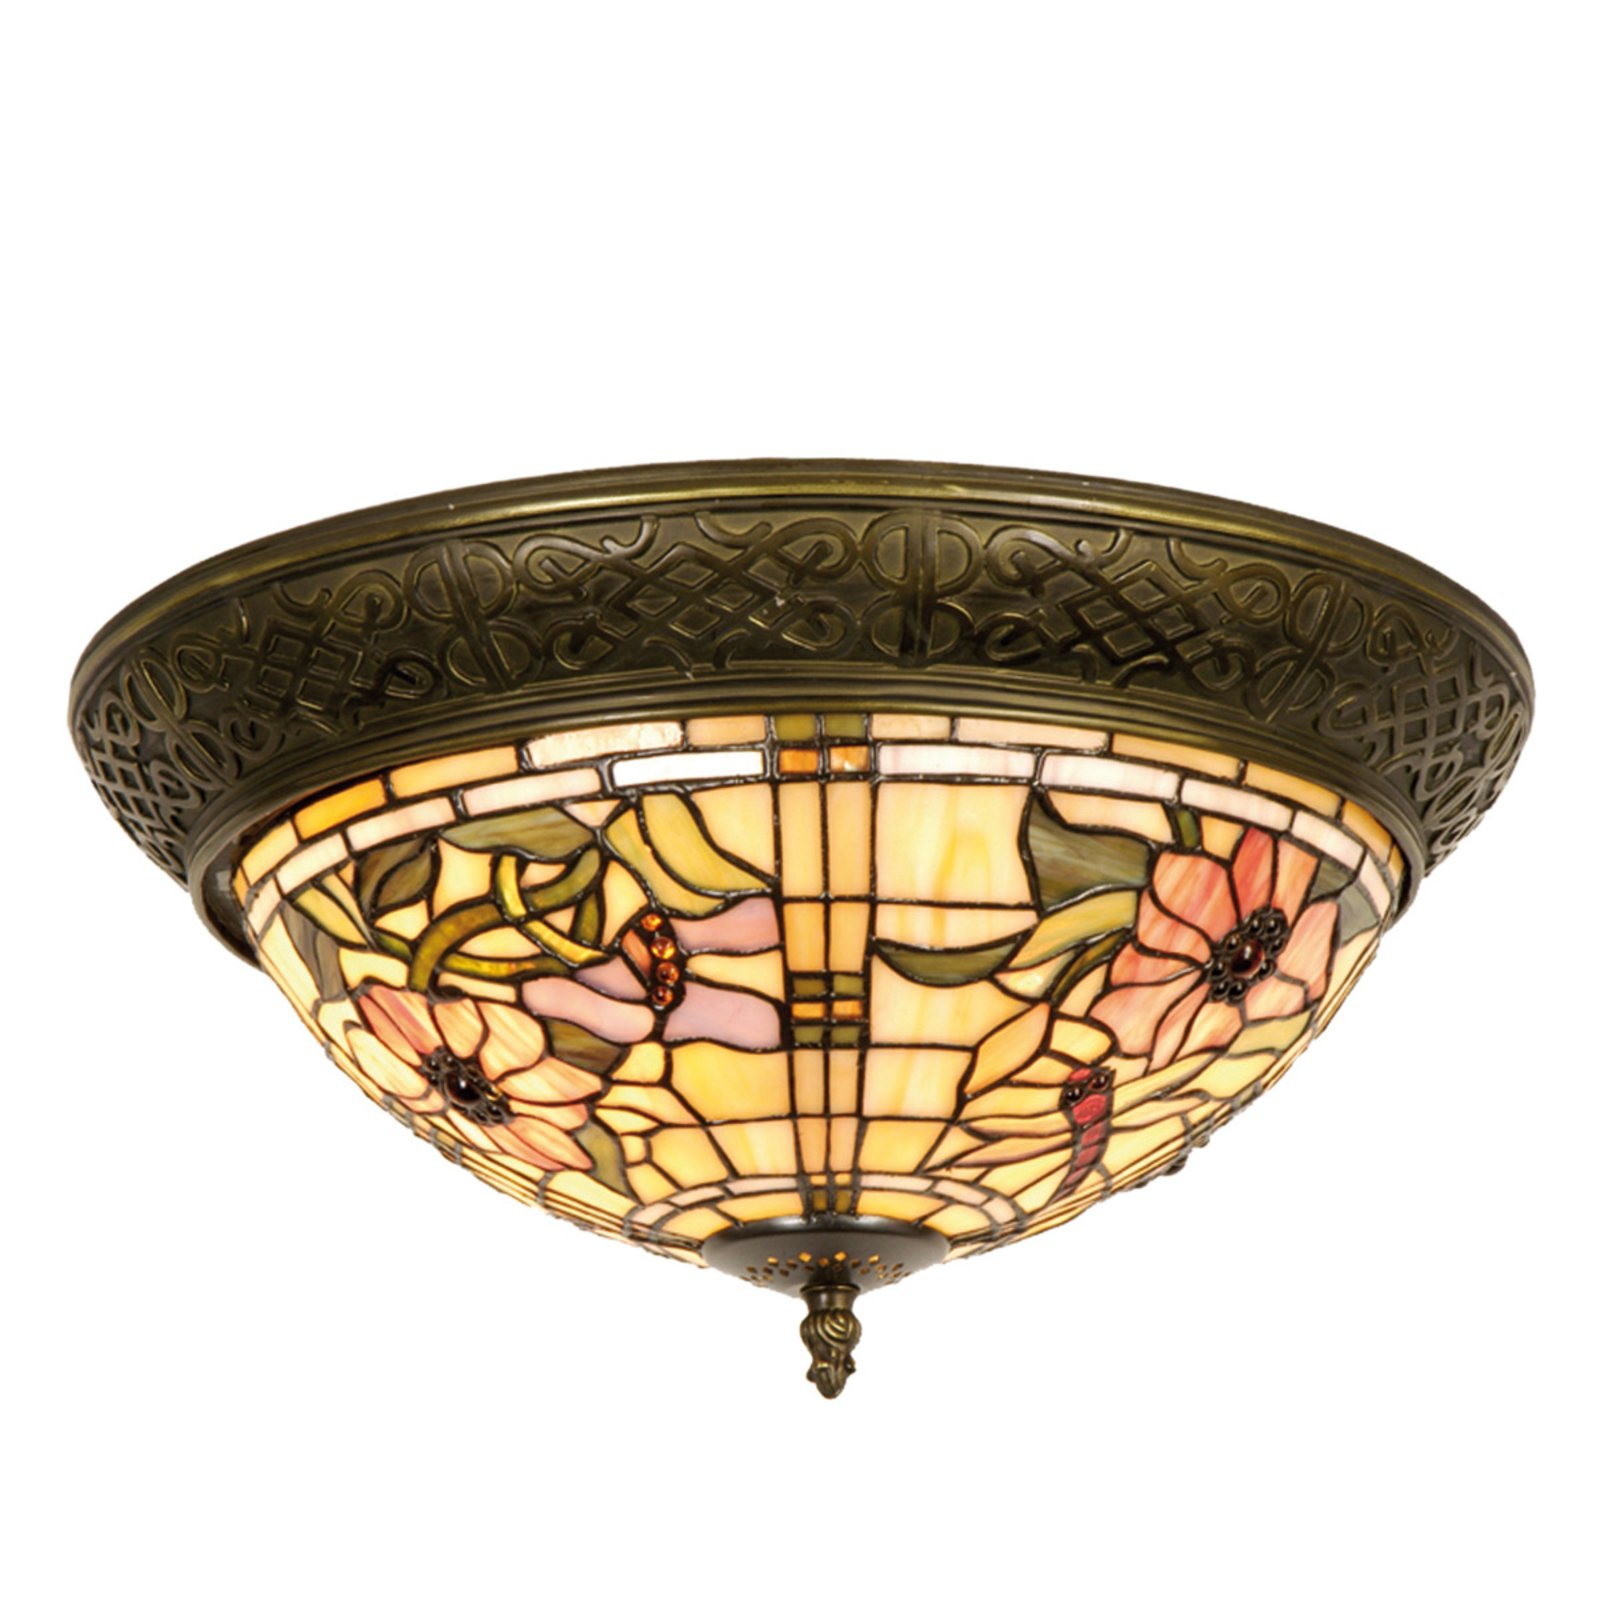 Mira - plafondlamp in Tiffany-stijl